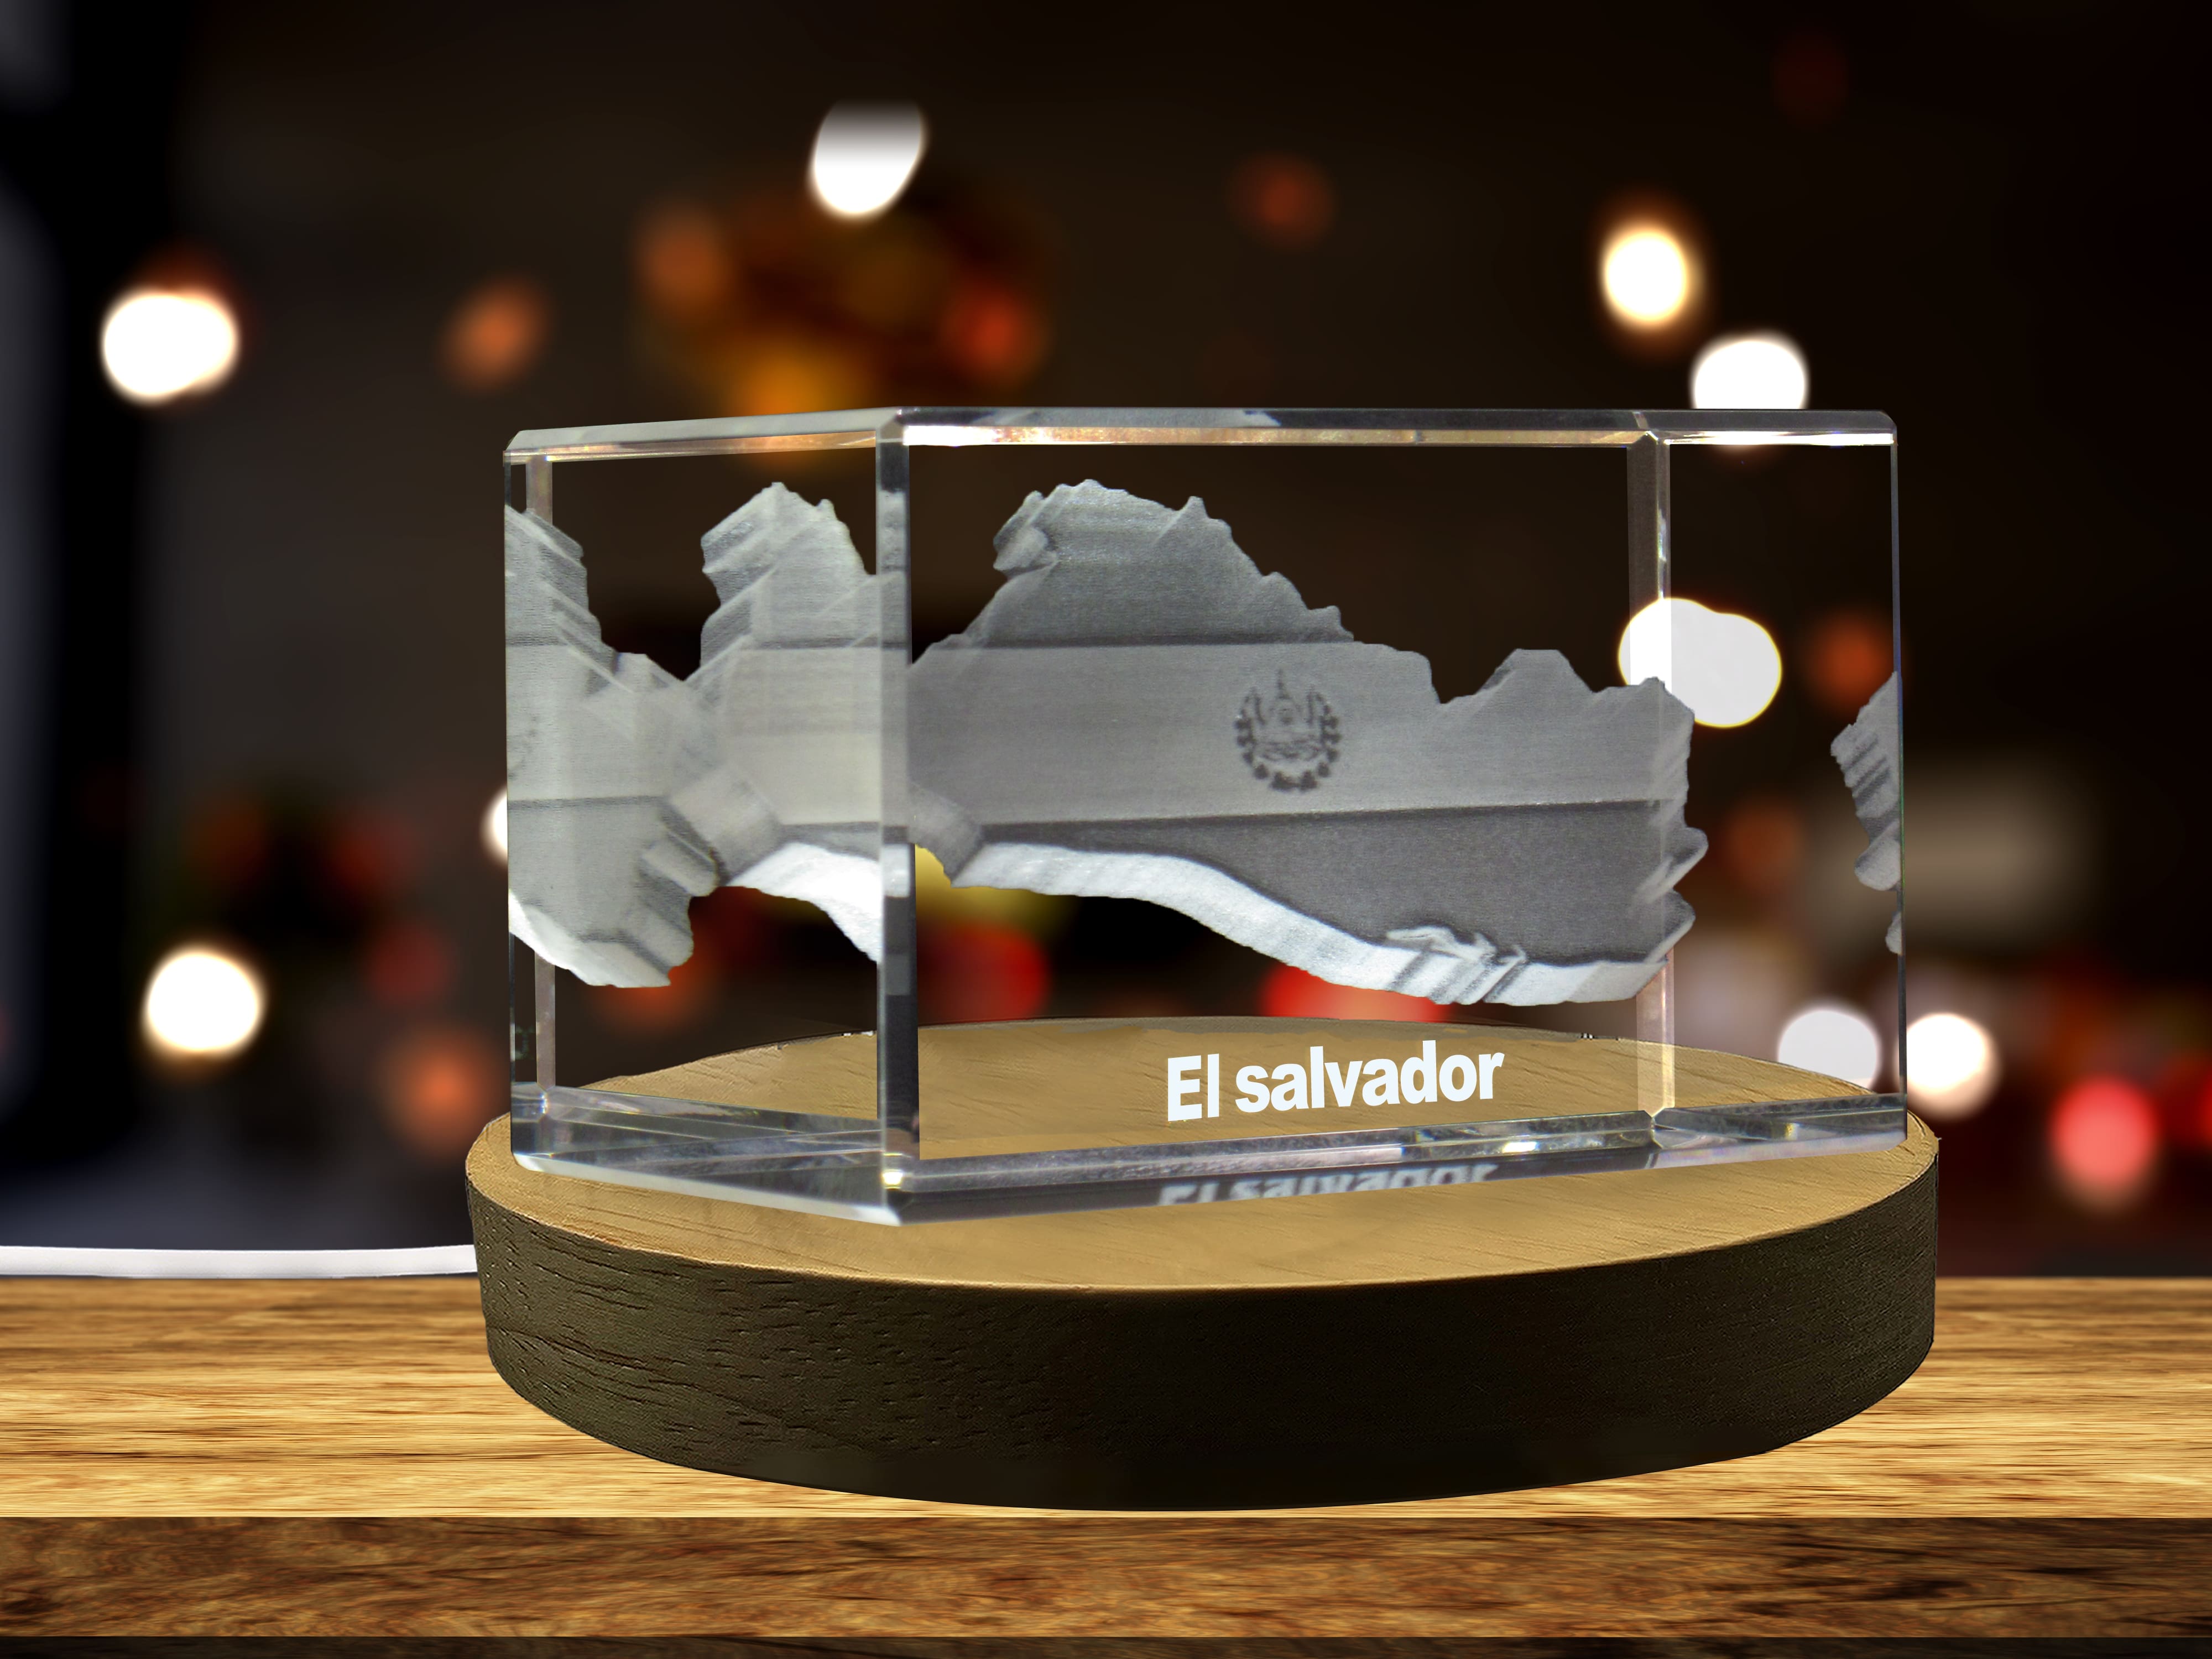 El Salvador 3D Engraved Crystal 3D Engraved Crystal Keepsake/Gift/Decor/Collectible/Souvenir A&B Crystal Collection